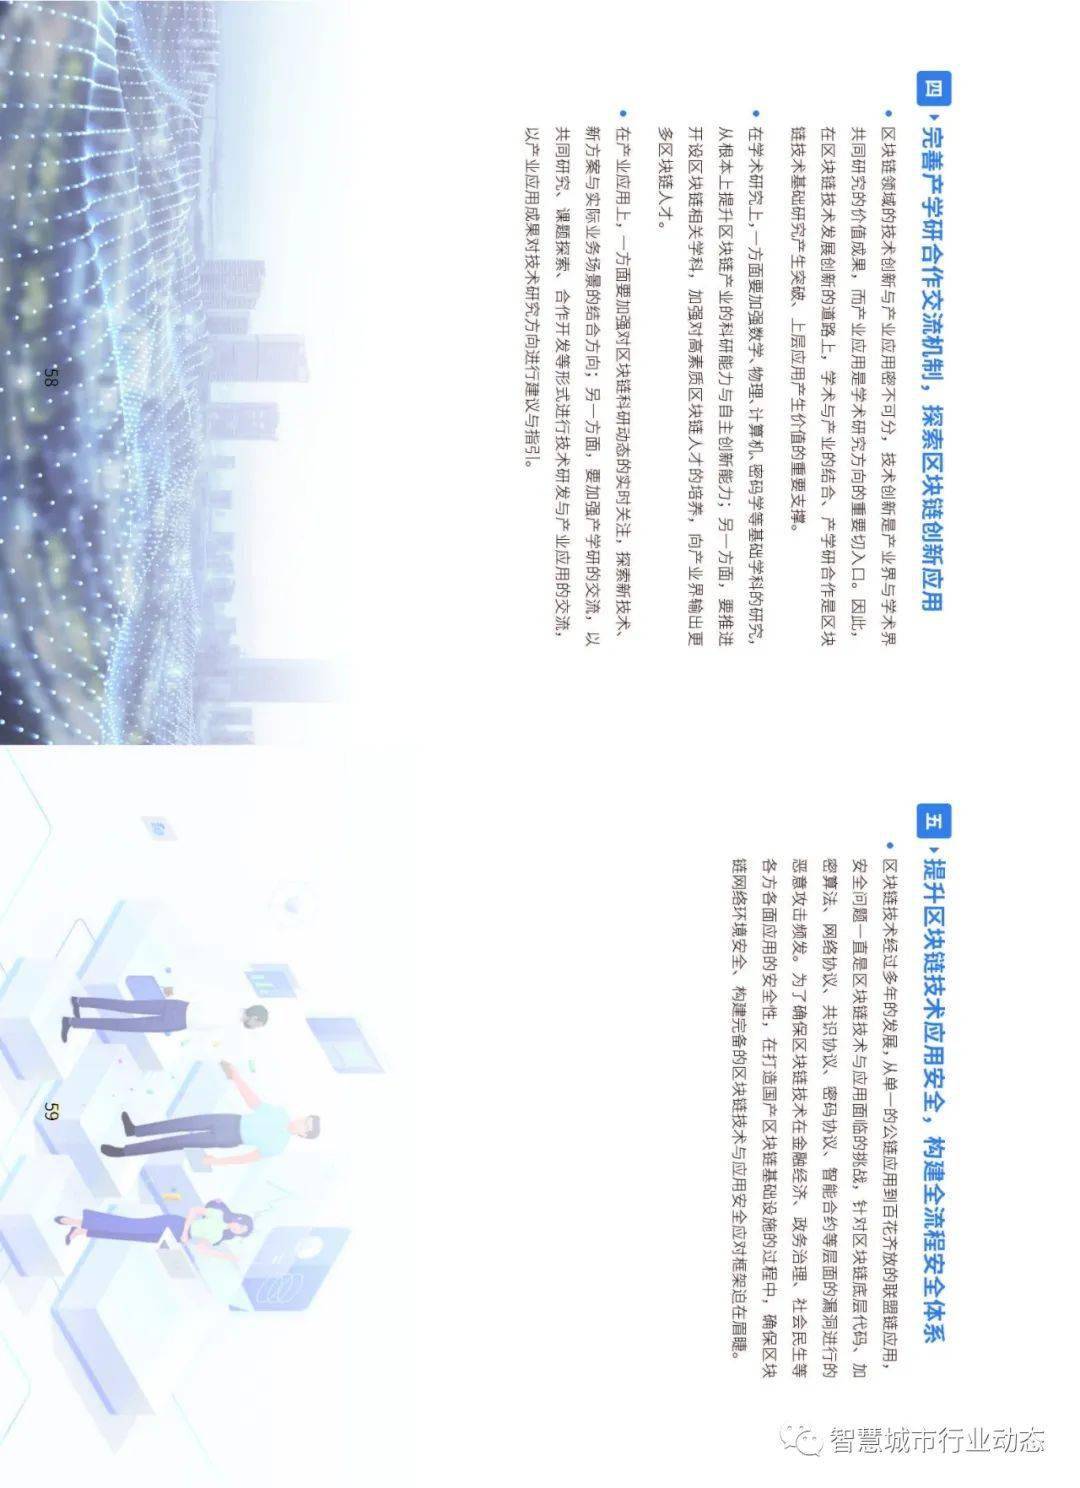 “区块链+物联网”+产业链金融关键技术、解决方案-第33张图片-OKX官网